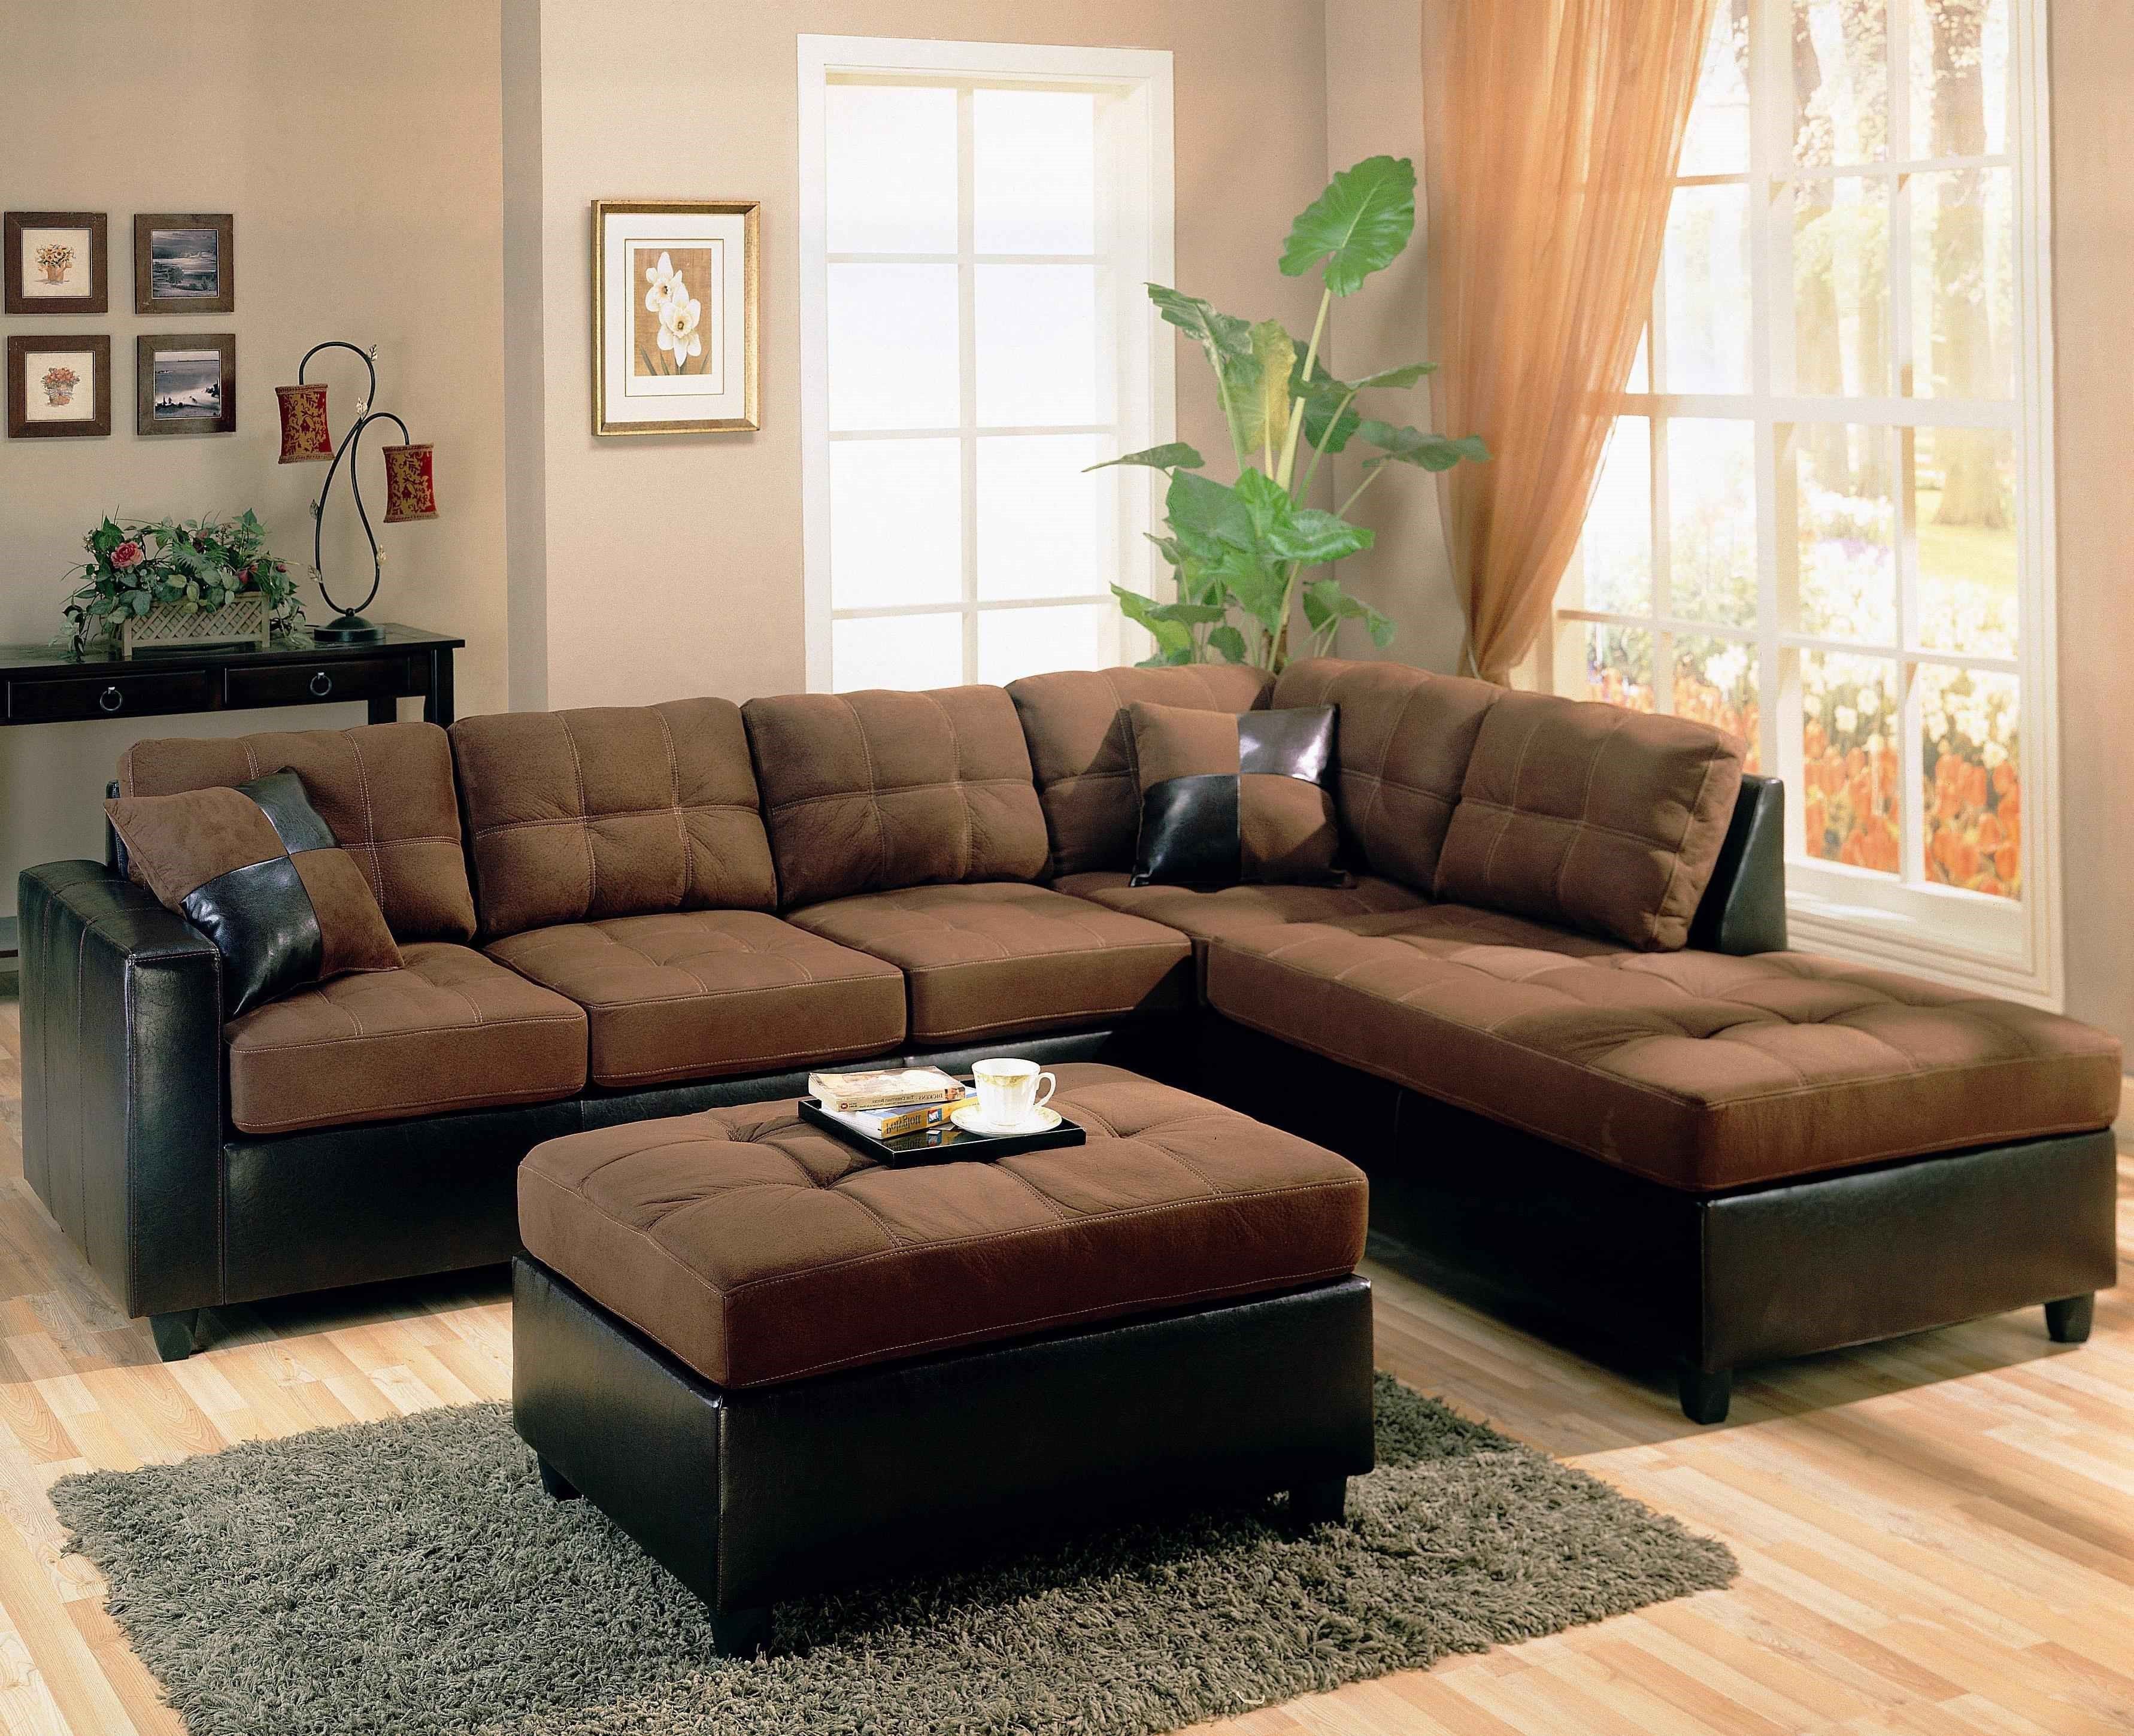 Фото углового дивана в зале. Диван угловой коричневый. Диван в интерьере. Коричневая мебель в интерьере. Угловые диваны для гостиной.